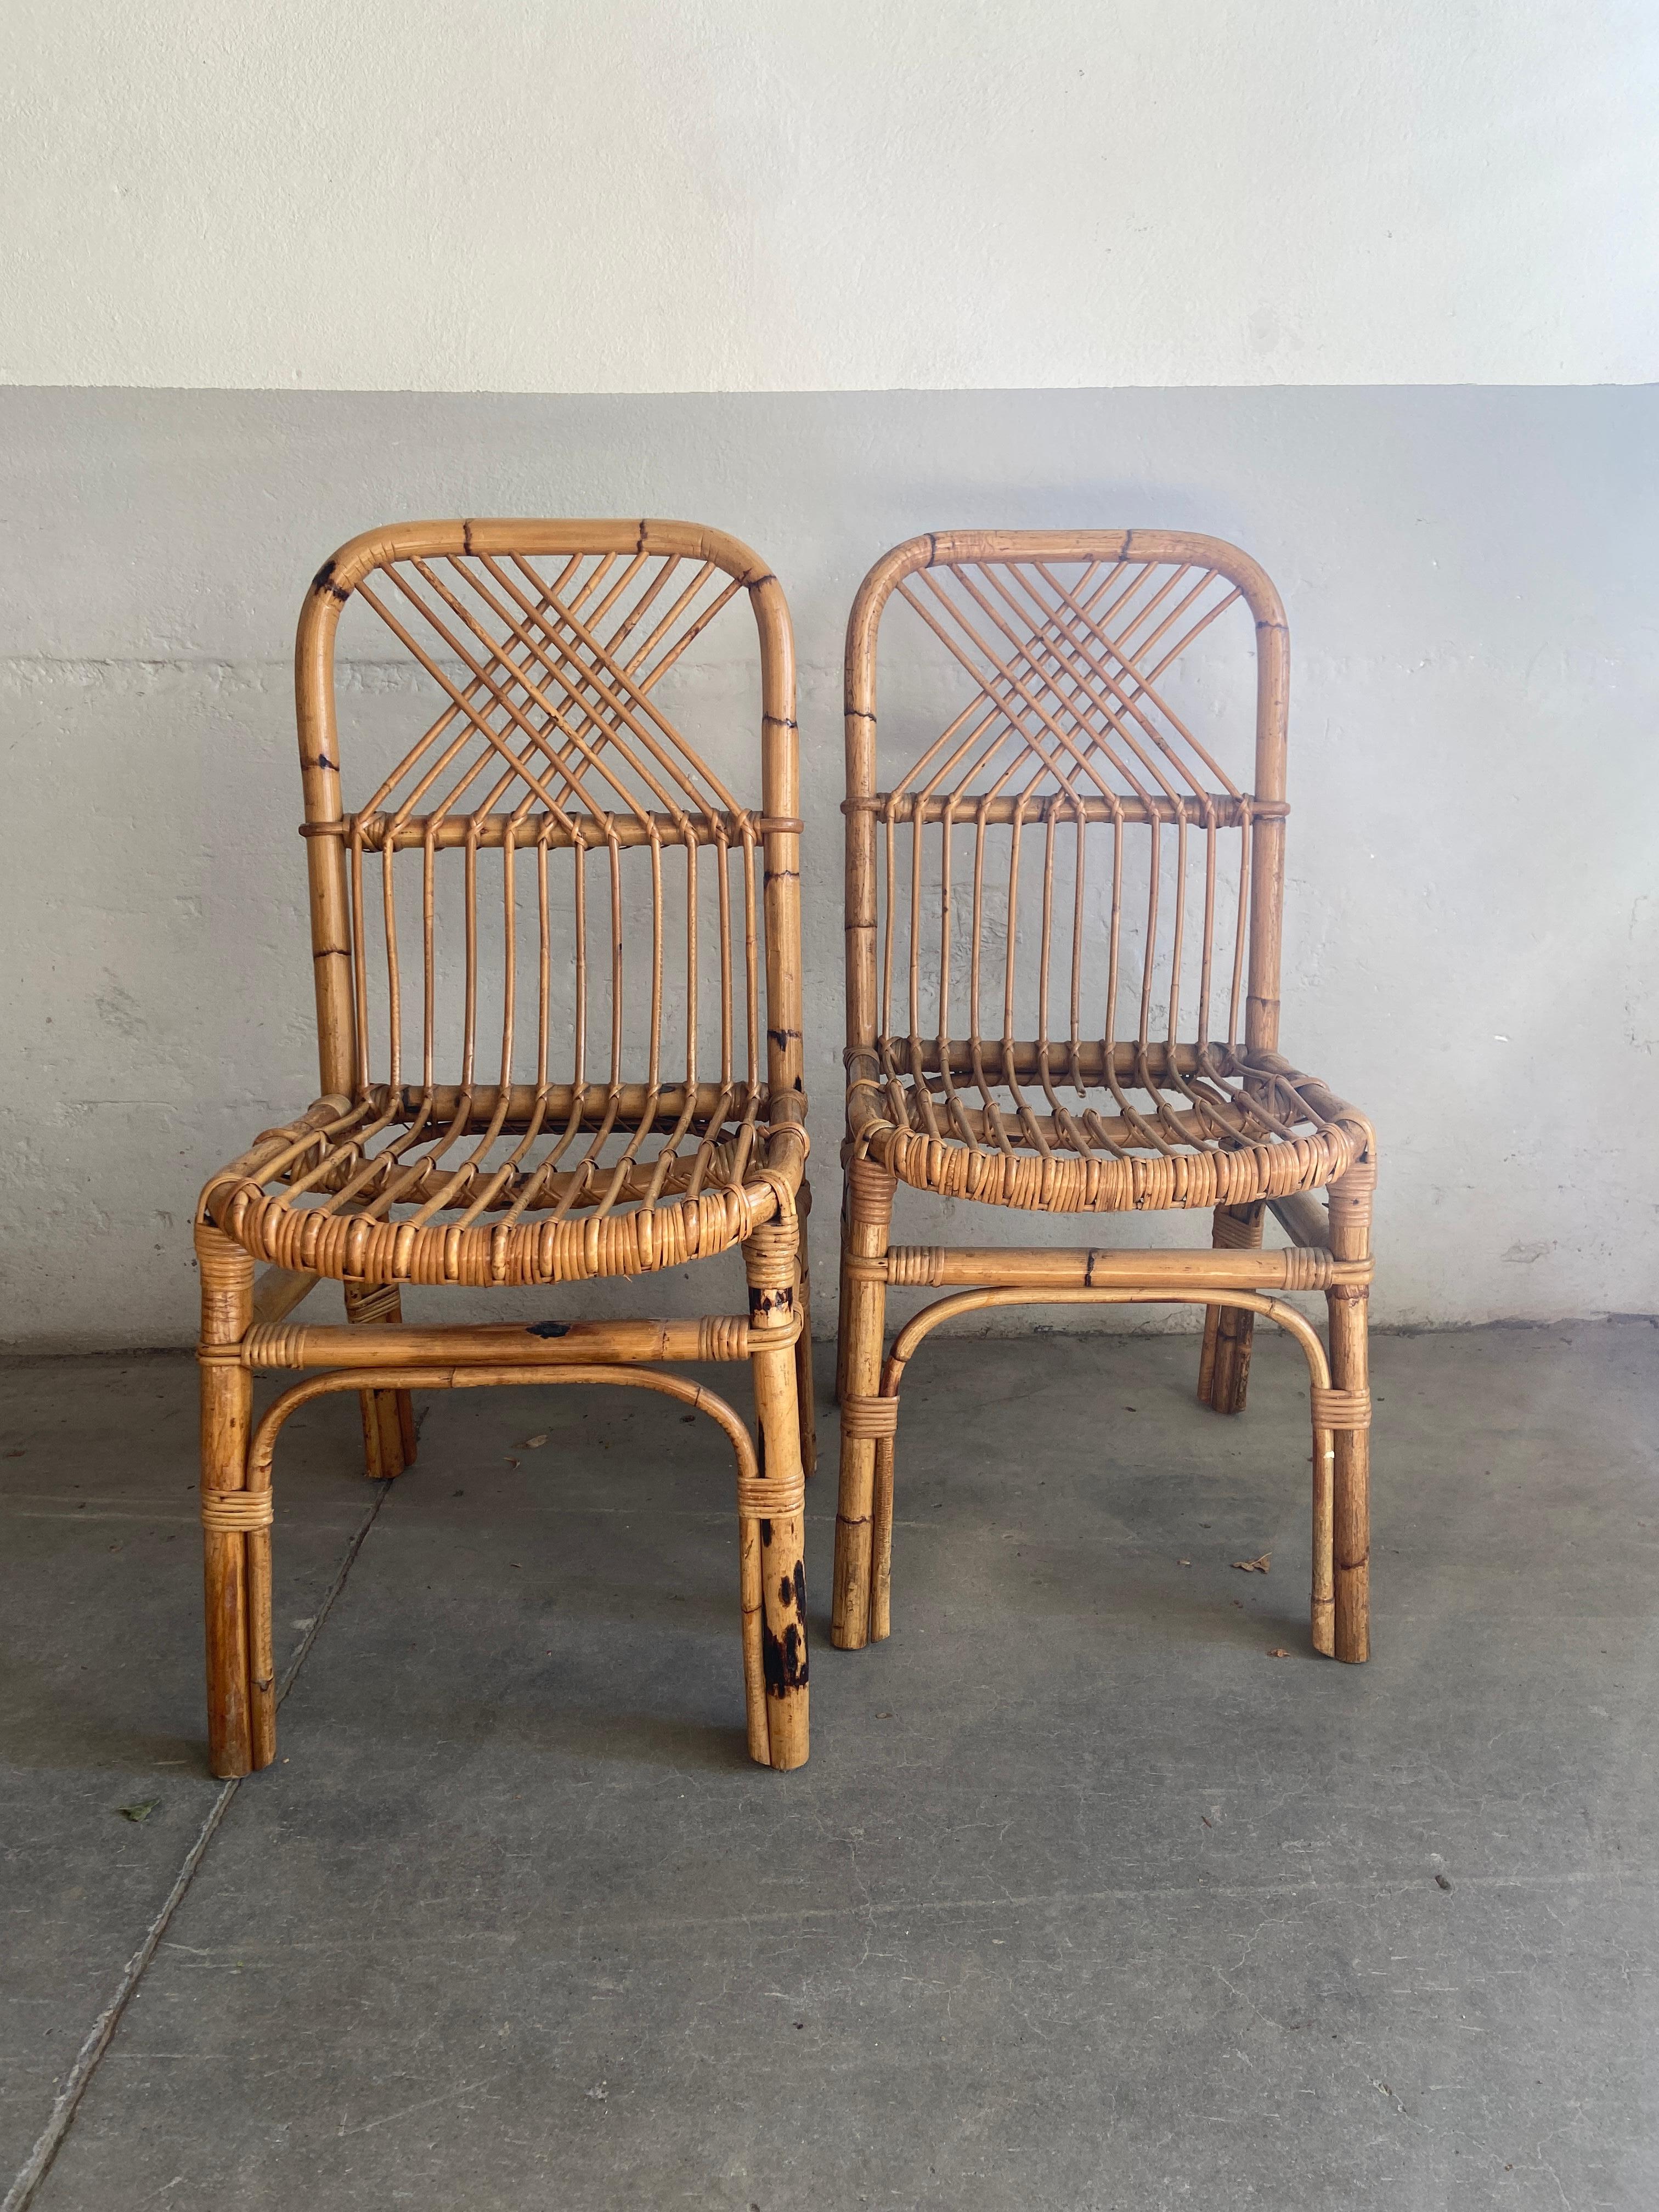 Paire de chaises italiennes en bambou et rotin, de style moderne du milieu du siècle. 1970s
Ils peuvent devenir un ensemble avec leur table comme indiqué sur les photos.
Les chaises sont en très bon état vintage. L'usure correspond à l'âge et à